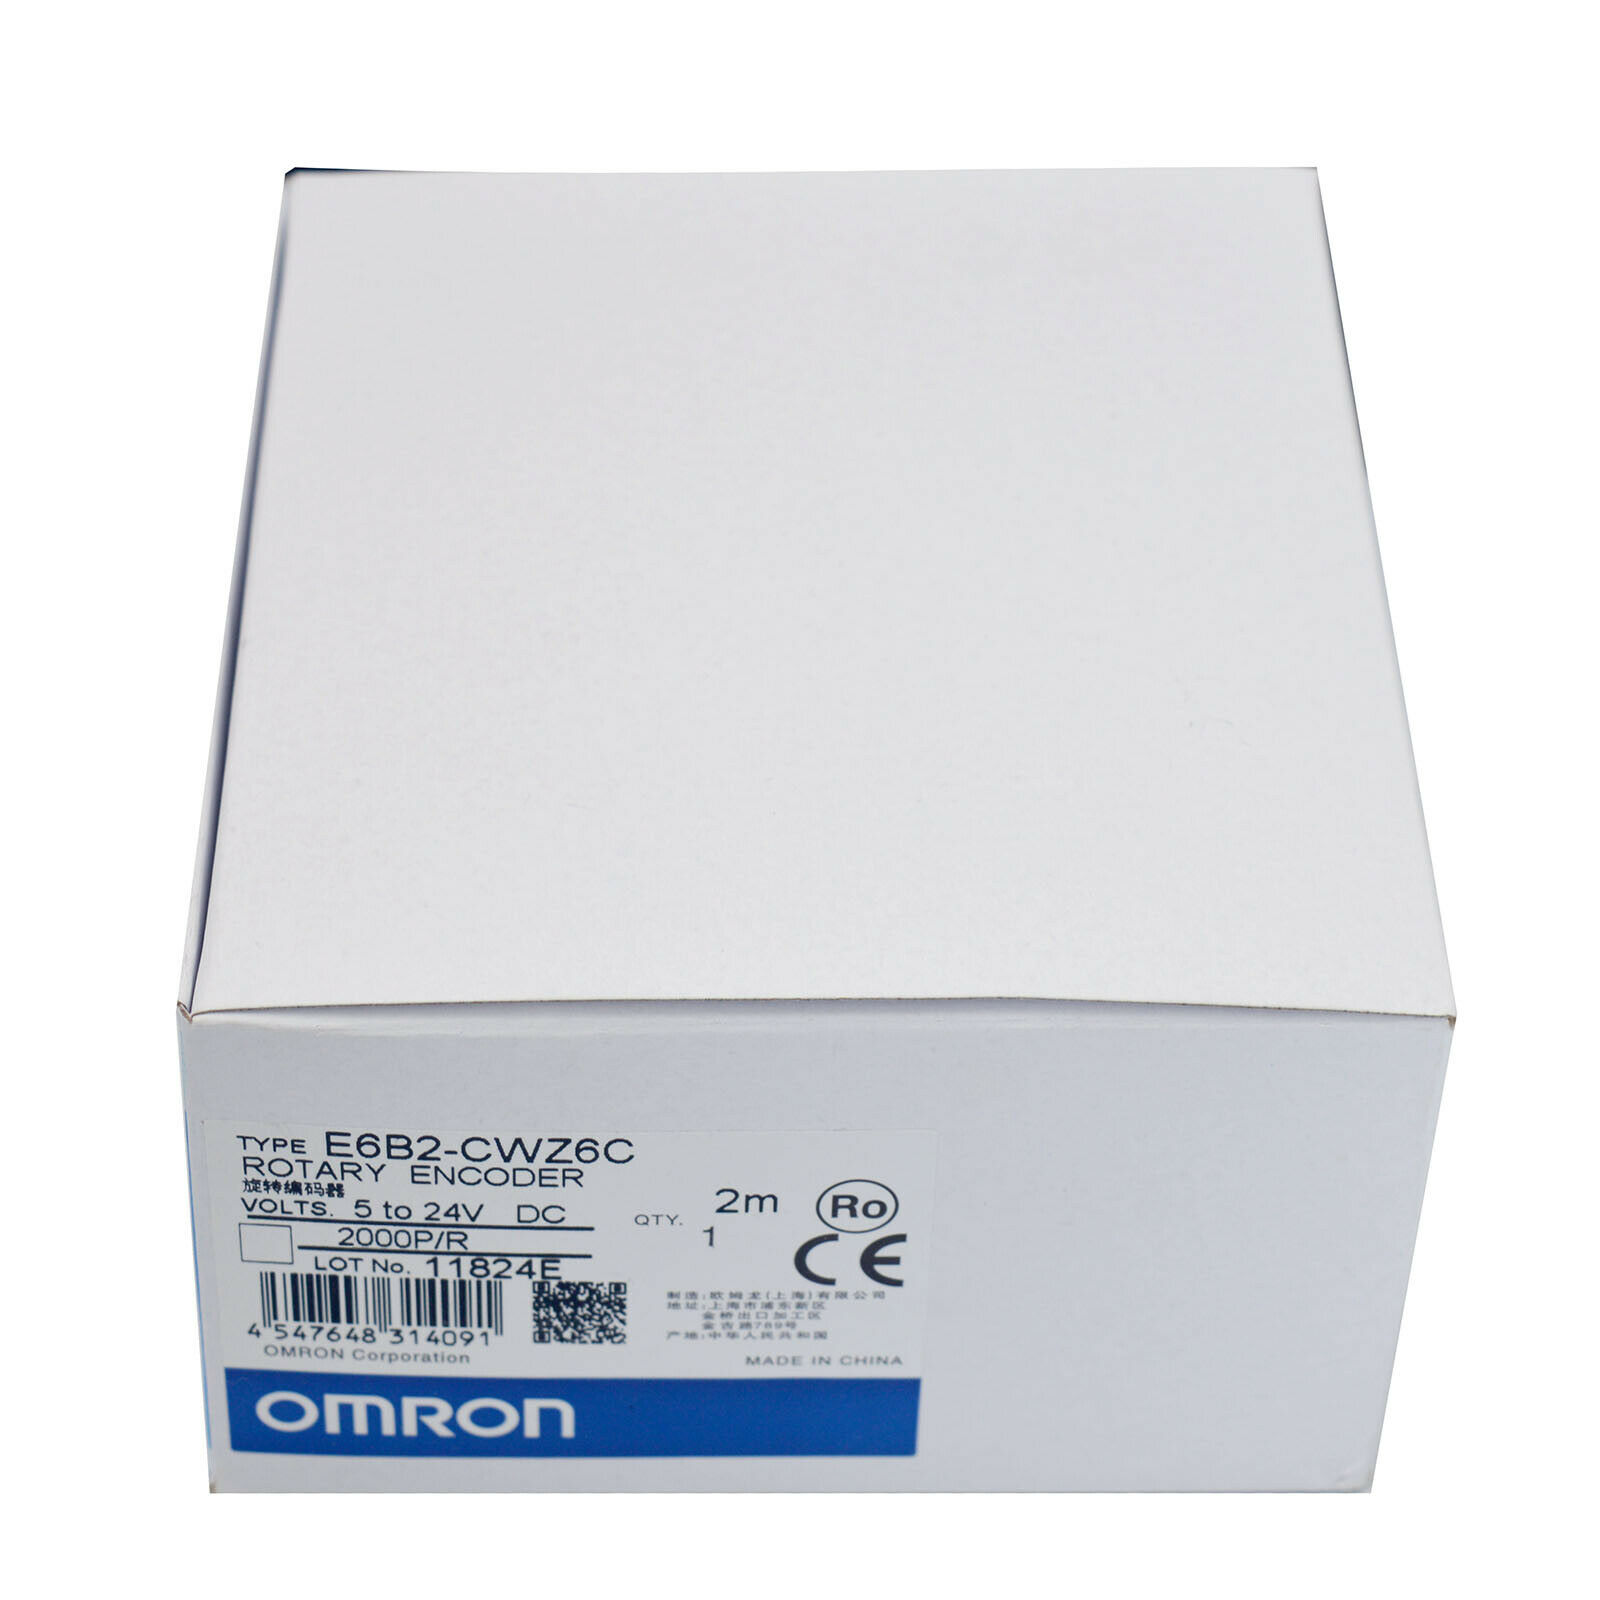 Omron E6b2-cwz6c Rotary Encoder 2000p/r New